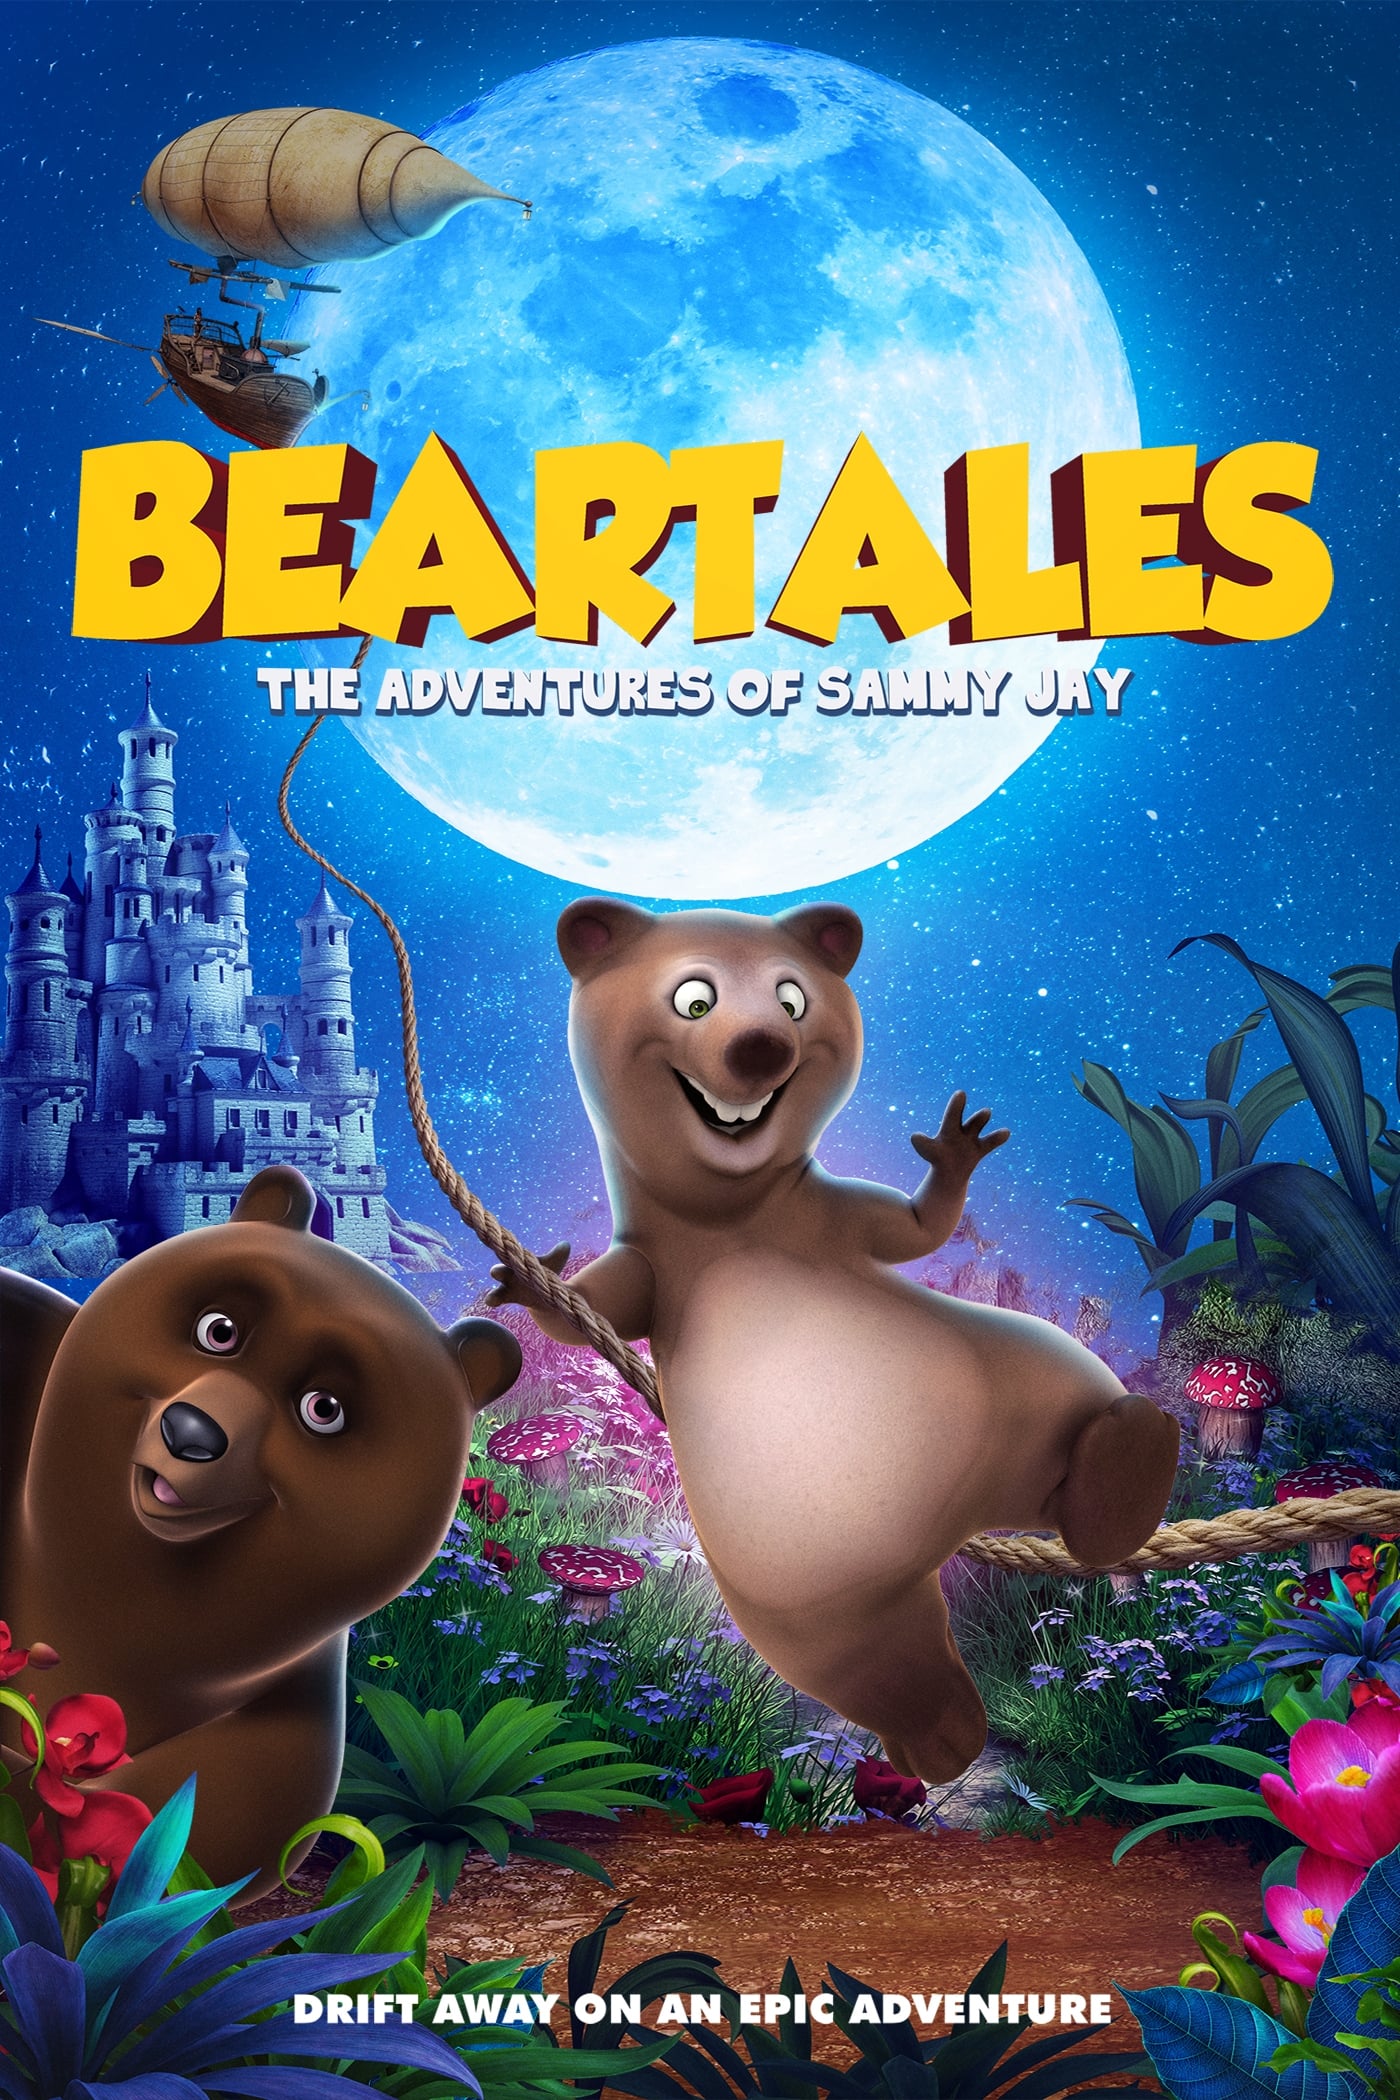 Beartales: The Adventure of Sammy Jay